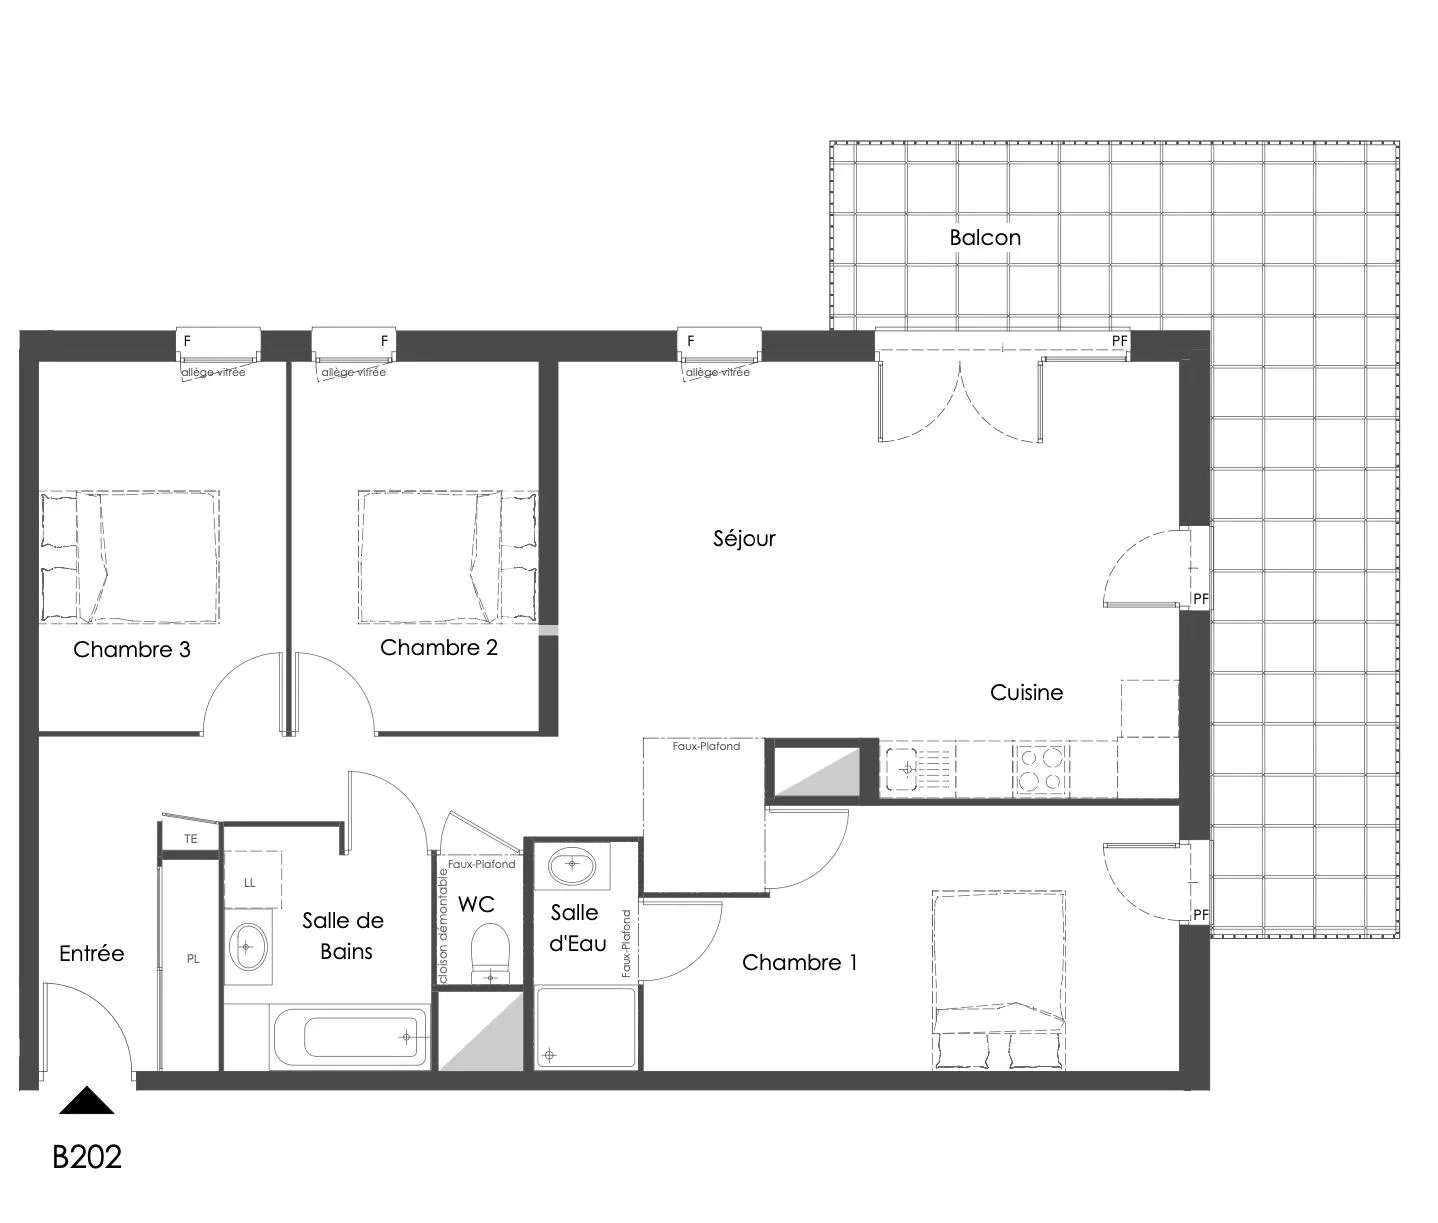 Vente de appartement d'une surface de 85.5 m2